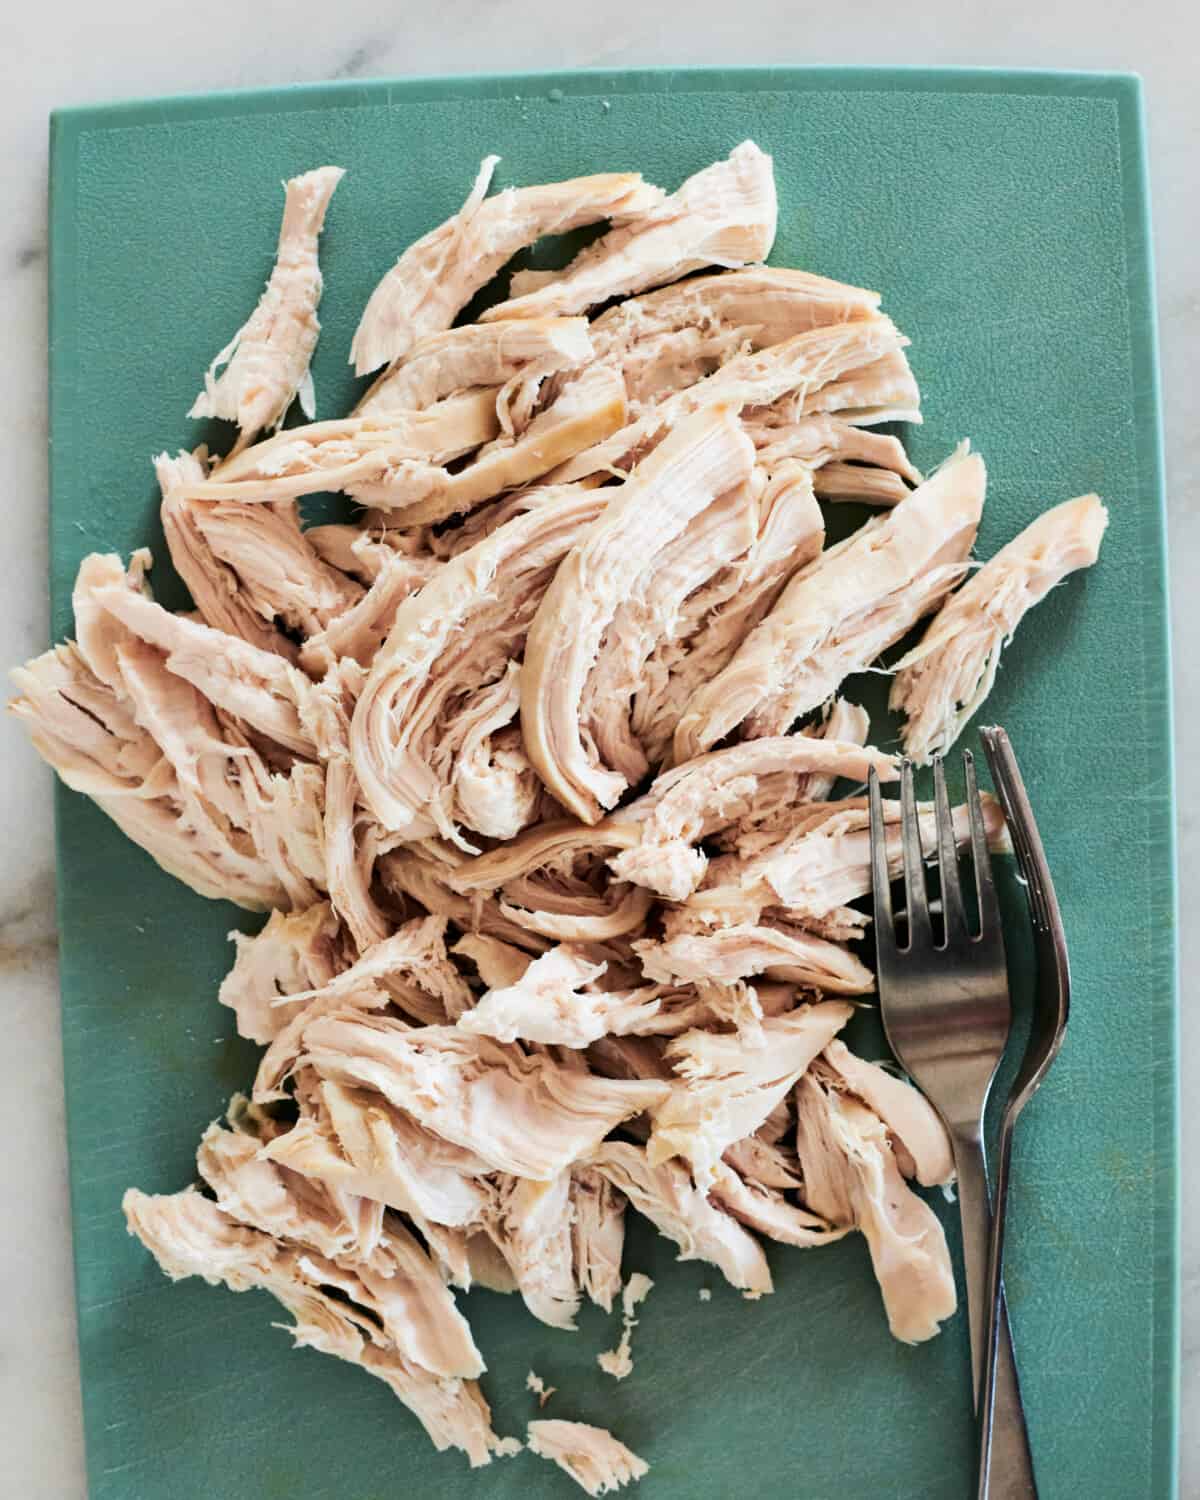 Shredded chicken on a cutting board. 